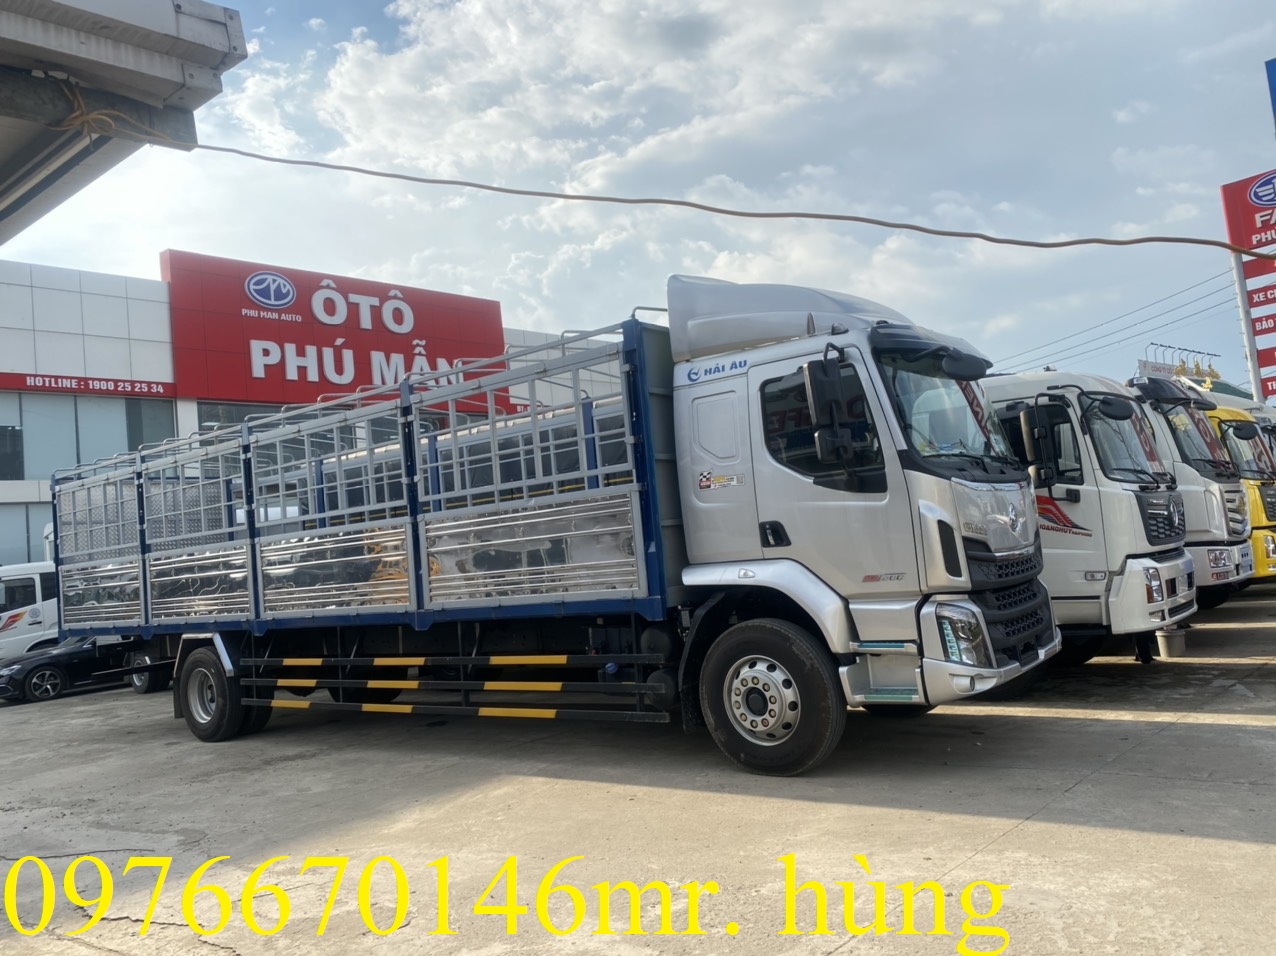 xe tải chenglong 9t thùng dài 10m giá rẻ xe có sẵn giao ngay